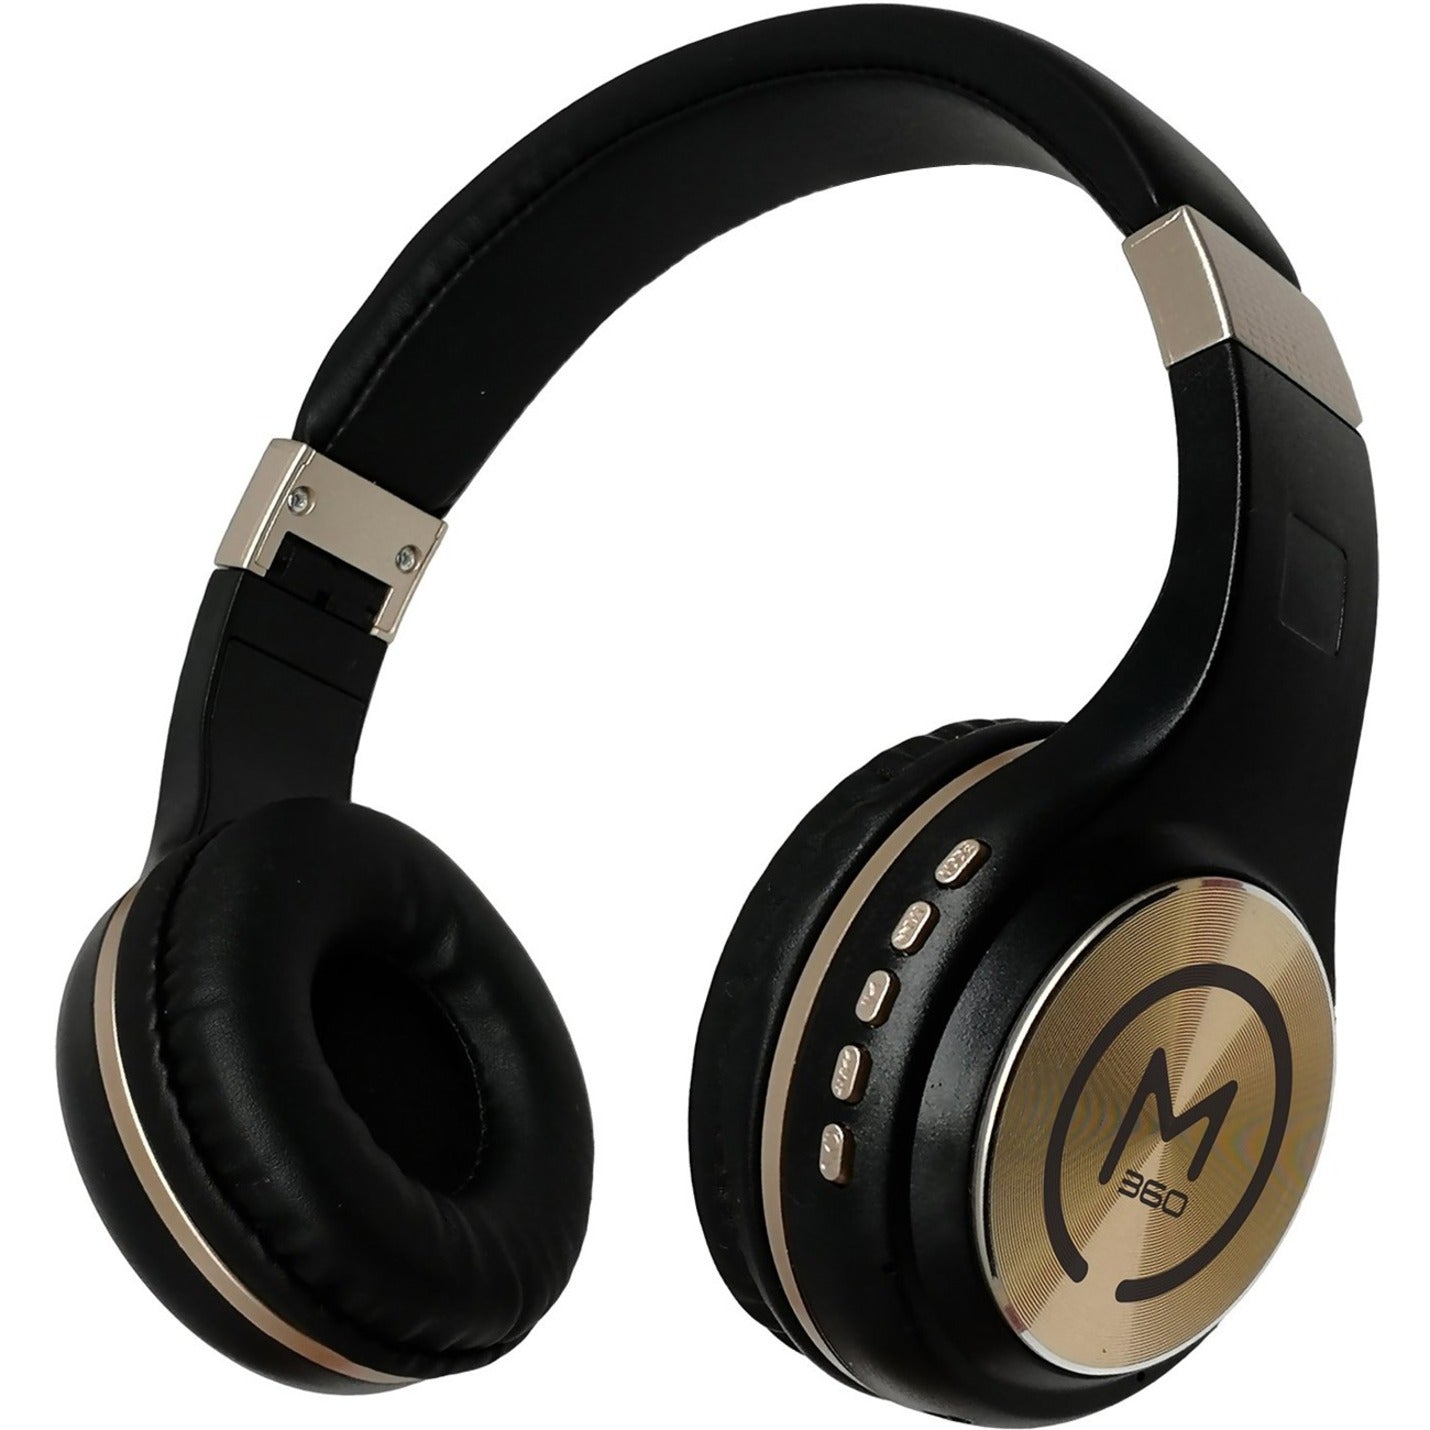 Morpheus 360 HP5500G ワイヤレス ステレオ Bluetooth ヘッドフォン、ブラック/ゴールド、内蔵マイク  ブランド名: モーフィアス  ワイヤレス: 無線 ステレオ: ステレオ Bluetooth: ブルートゥース ヘッドフォン: ヘッドホン ブラック: 黒 ゴールド: 金 内蔵: 内蔵 マイク: マイク